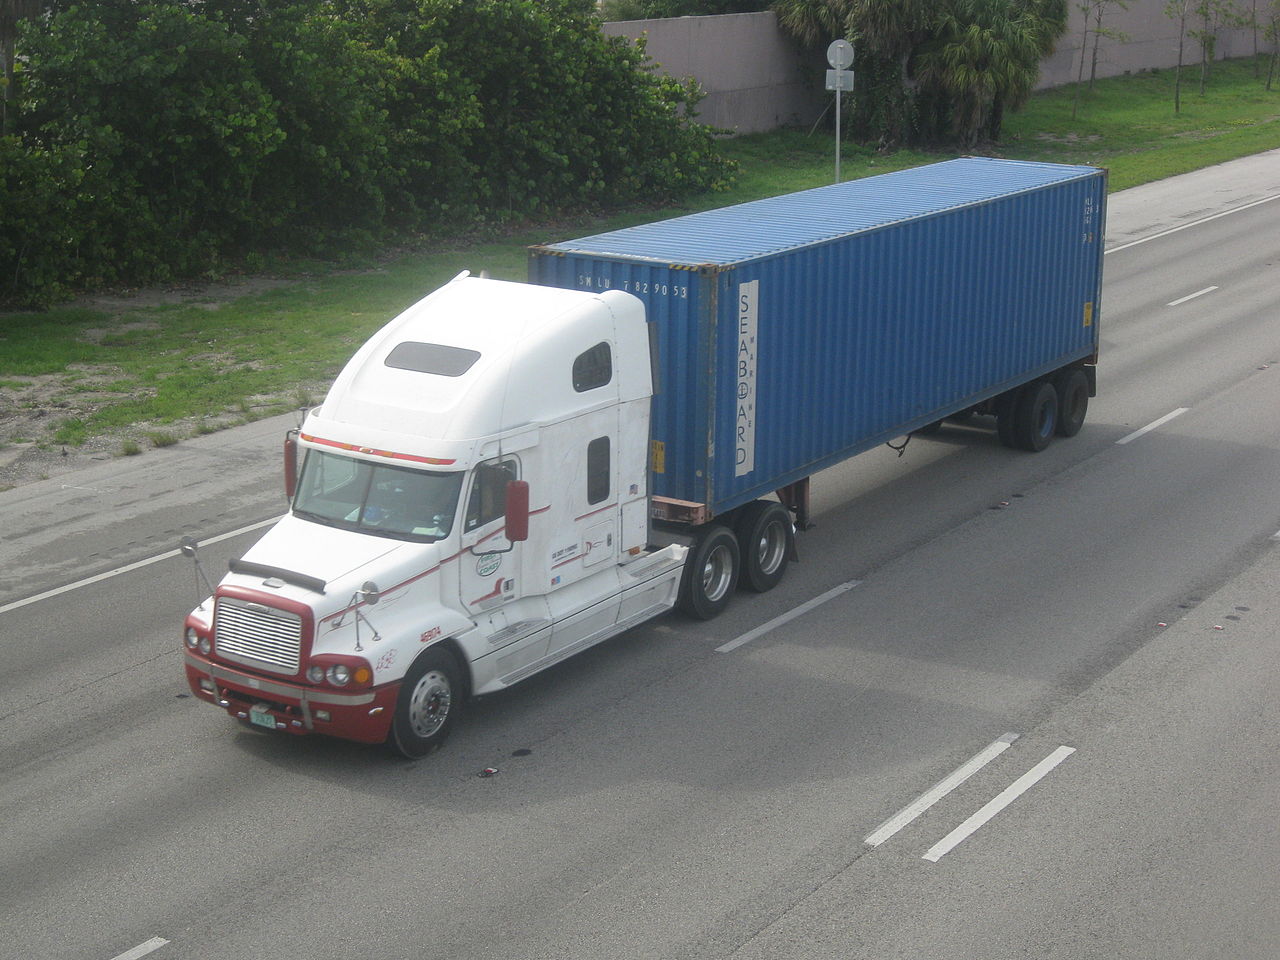 An intermodal container trailer